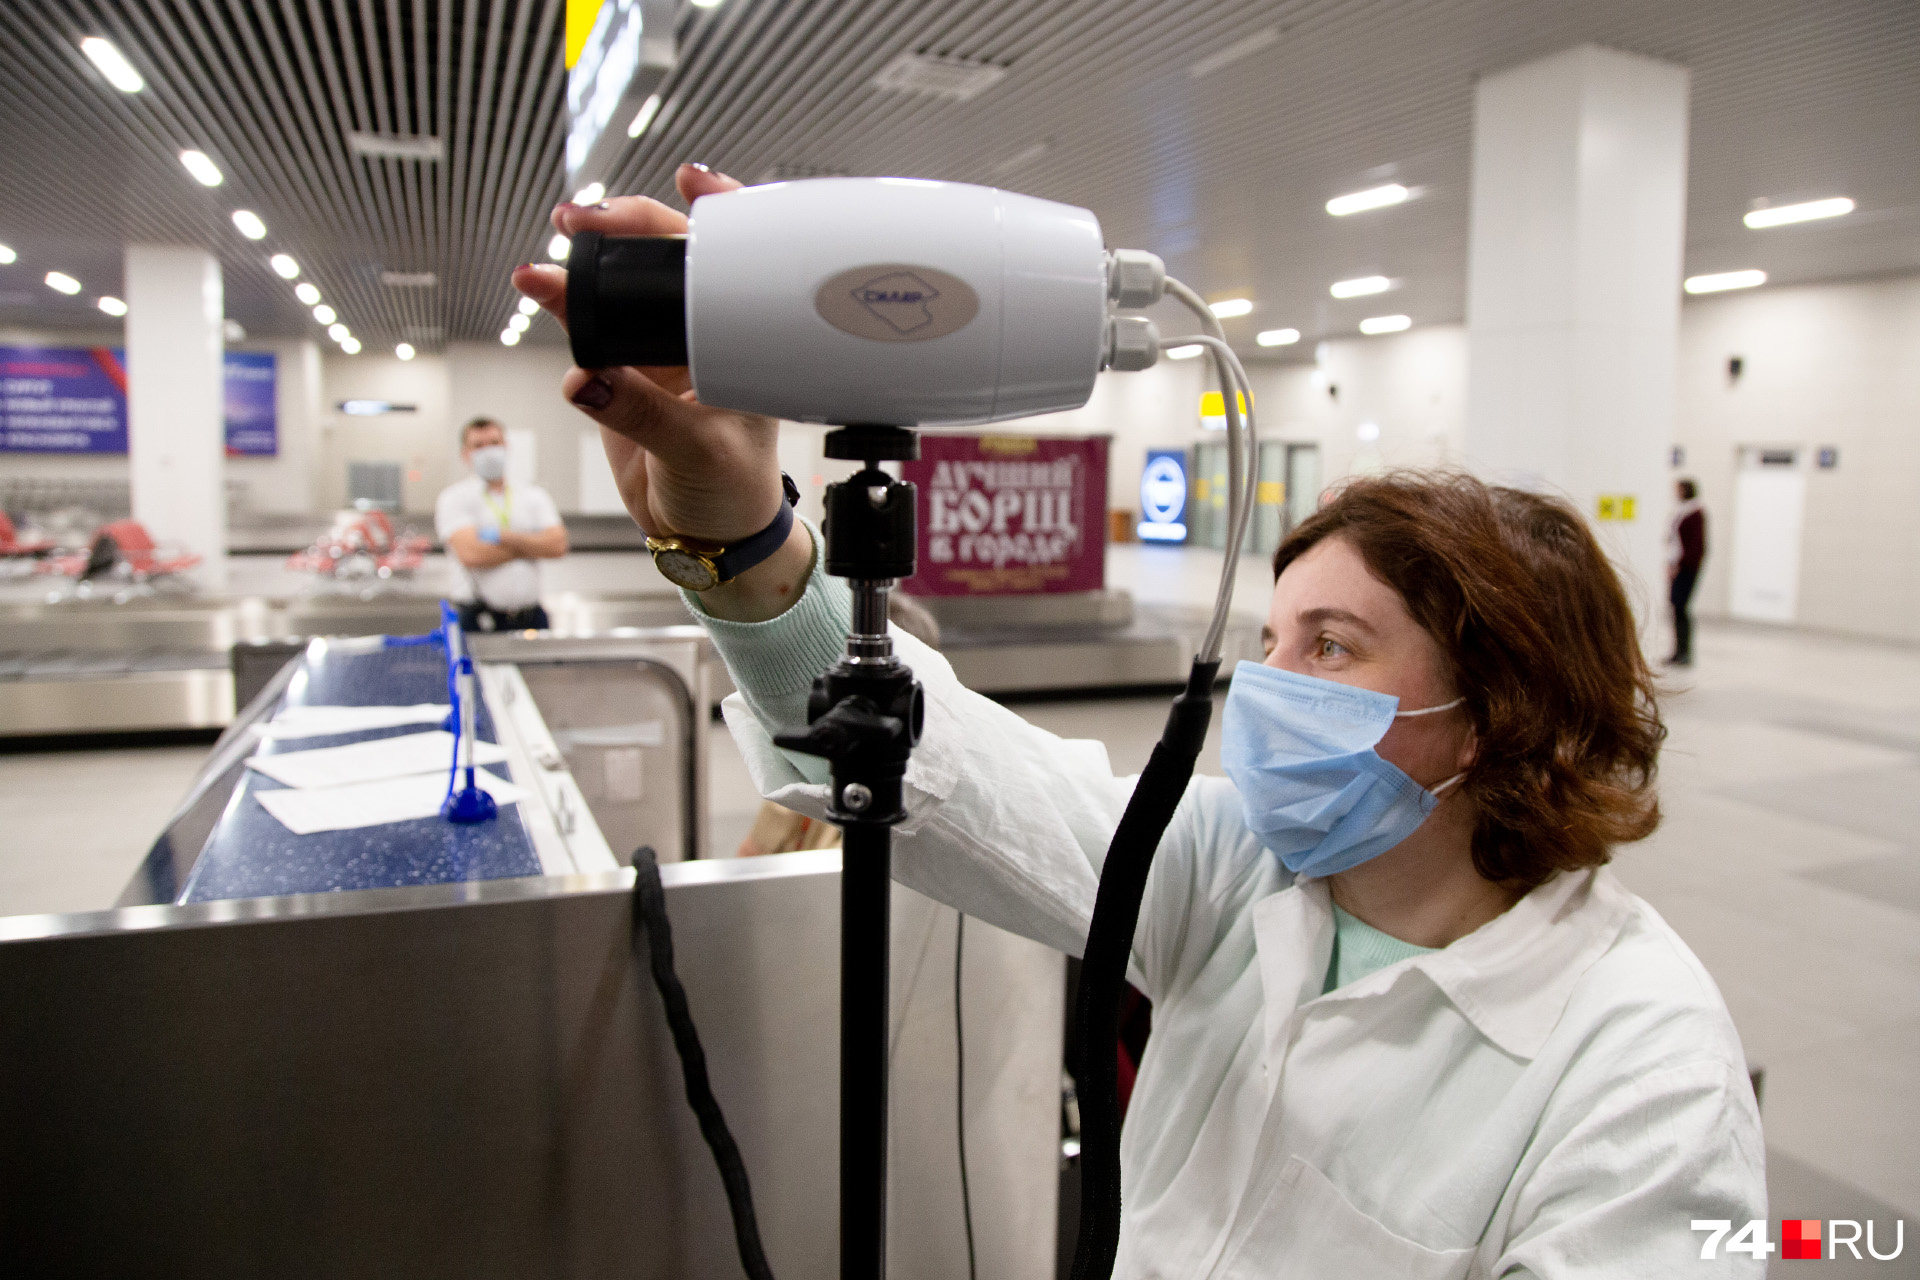 Пассажиров просят соблюдать санитарно-гигиенические правила, чтобы защититься от коронавируса